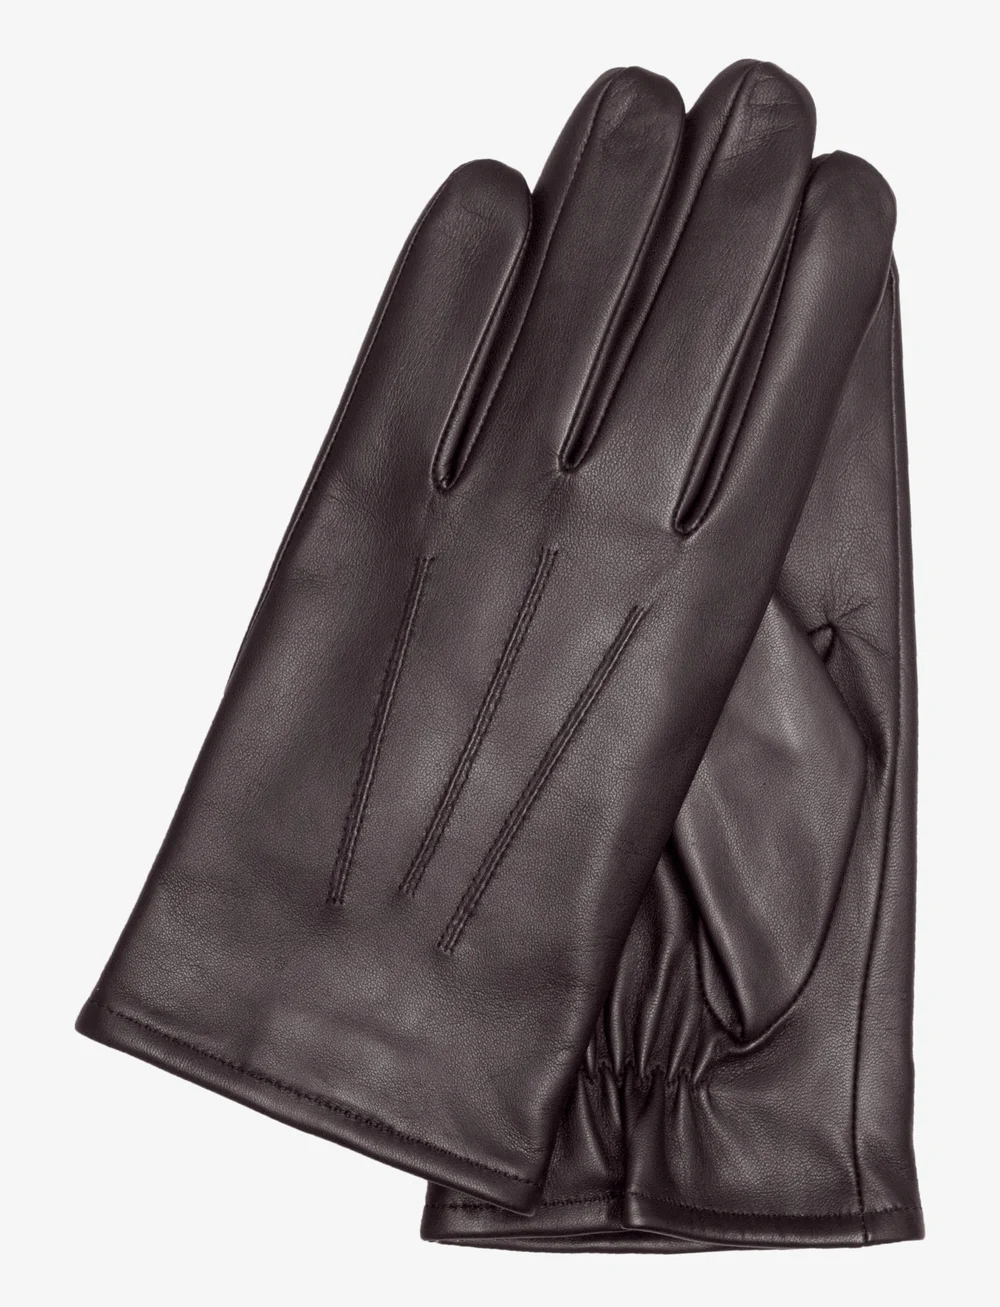 Kessler Liam - Gloves